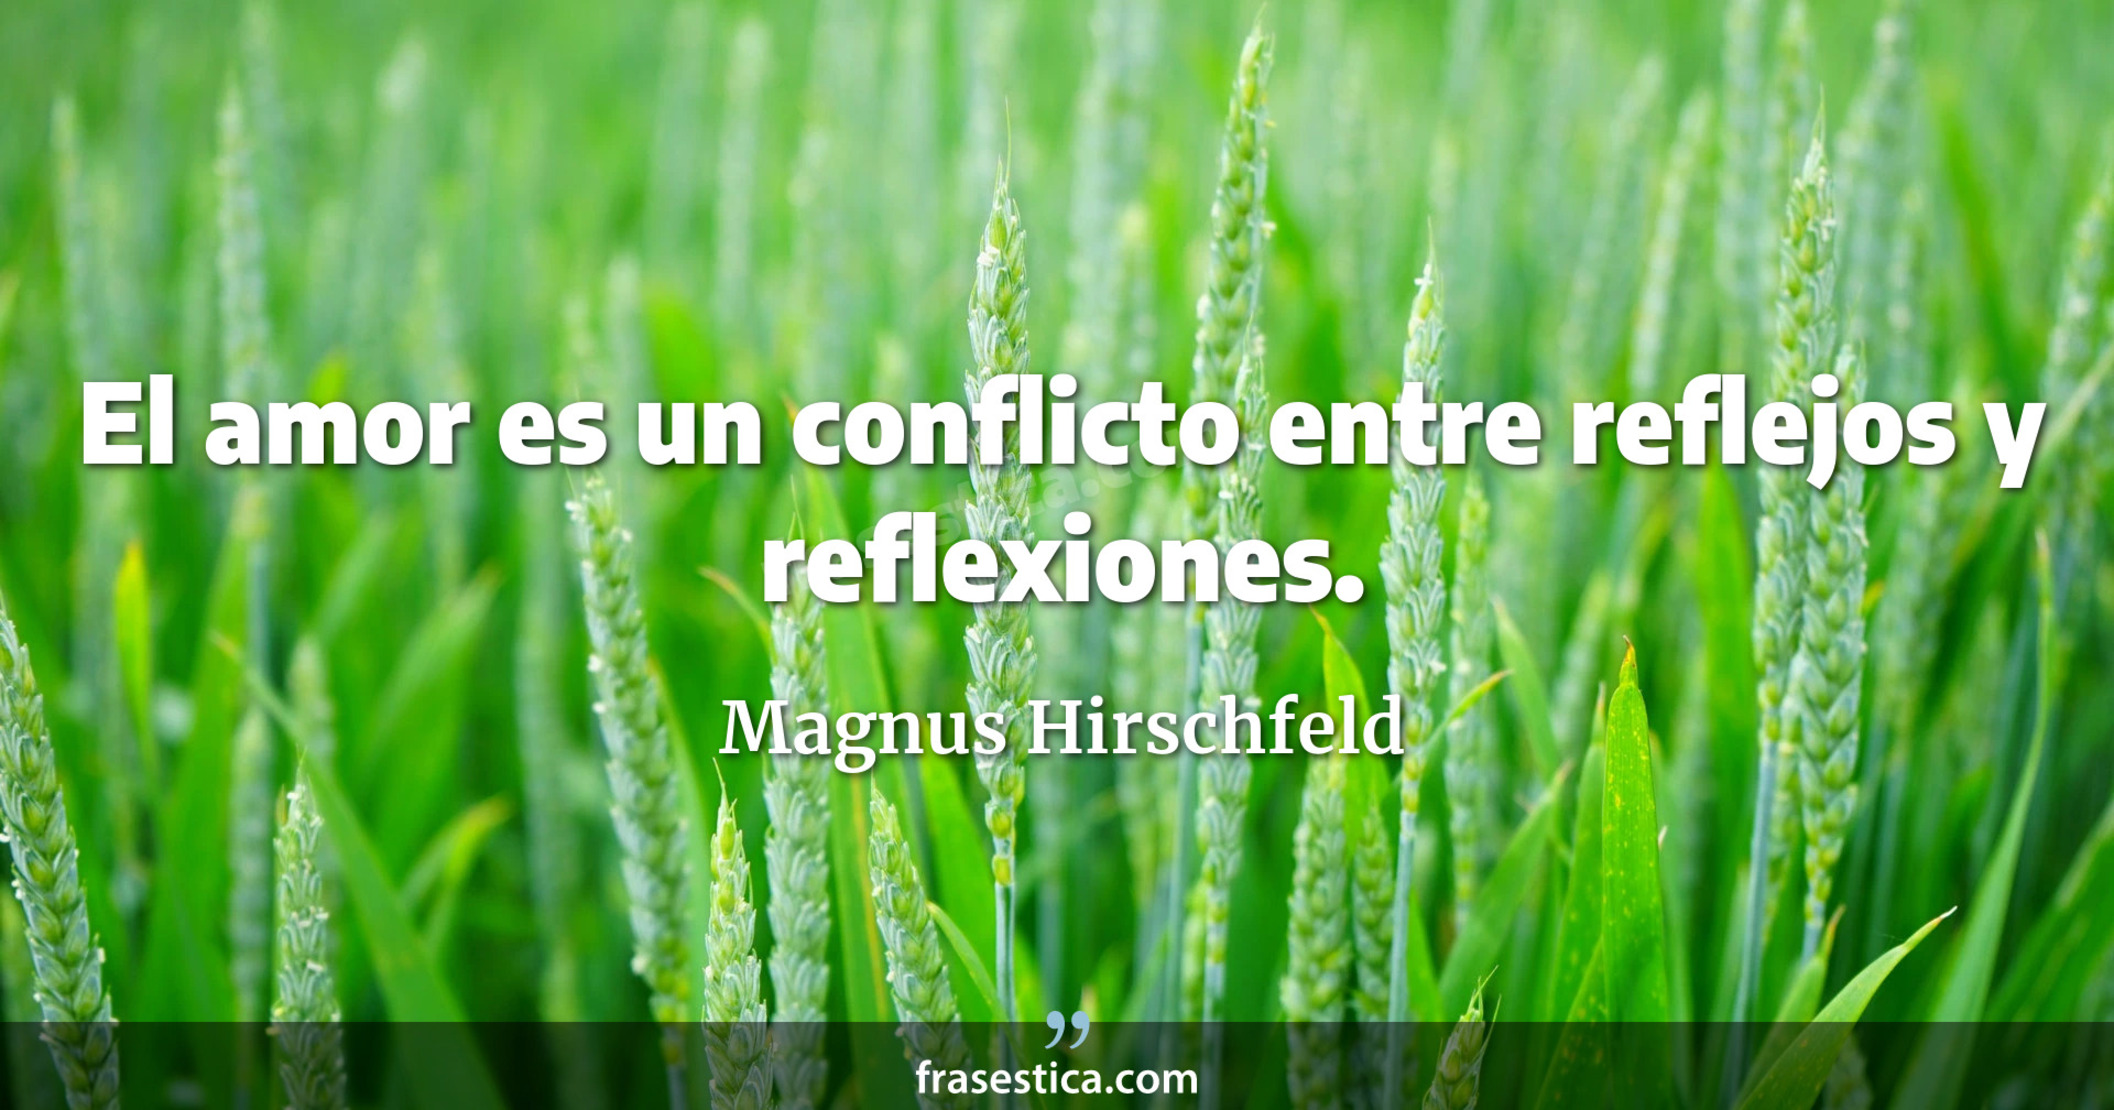 El amor es un conflicto entre reflejos y reflexiones. - Magnus Hirschfeld